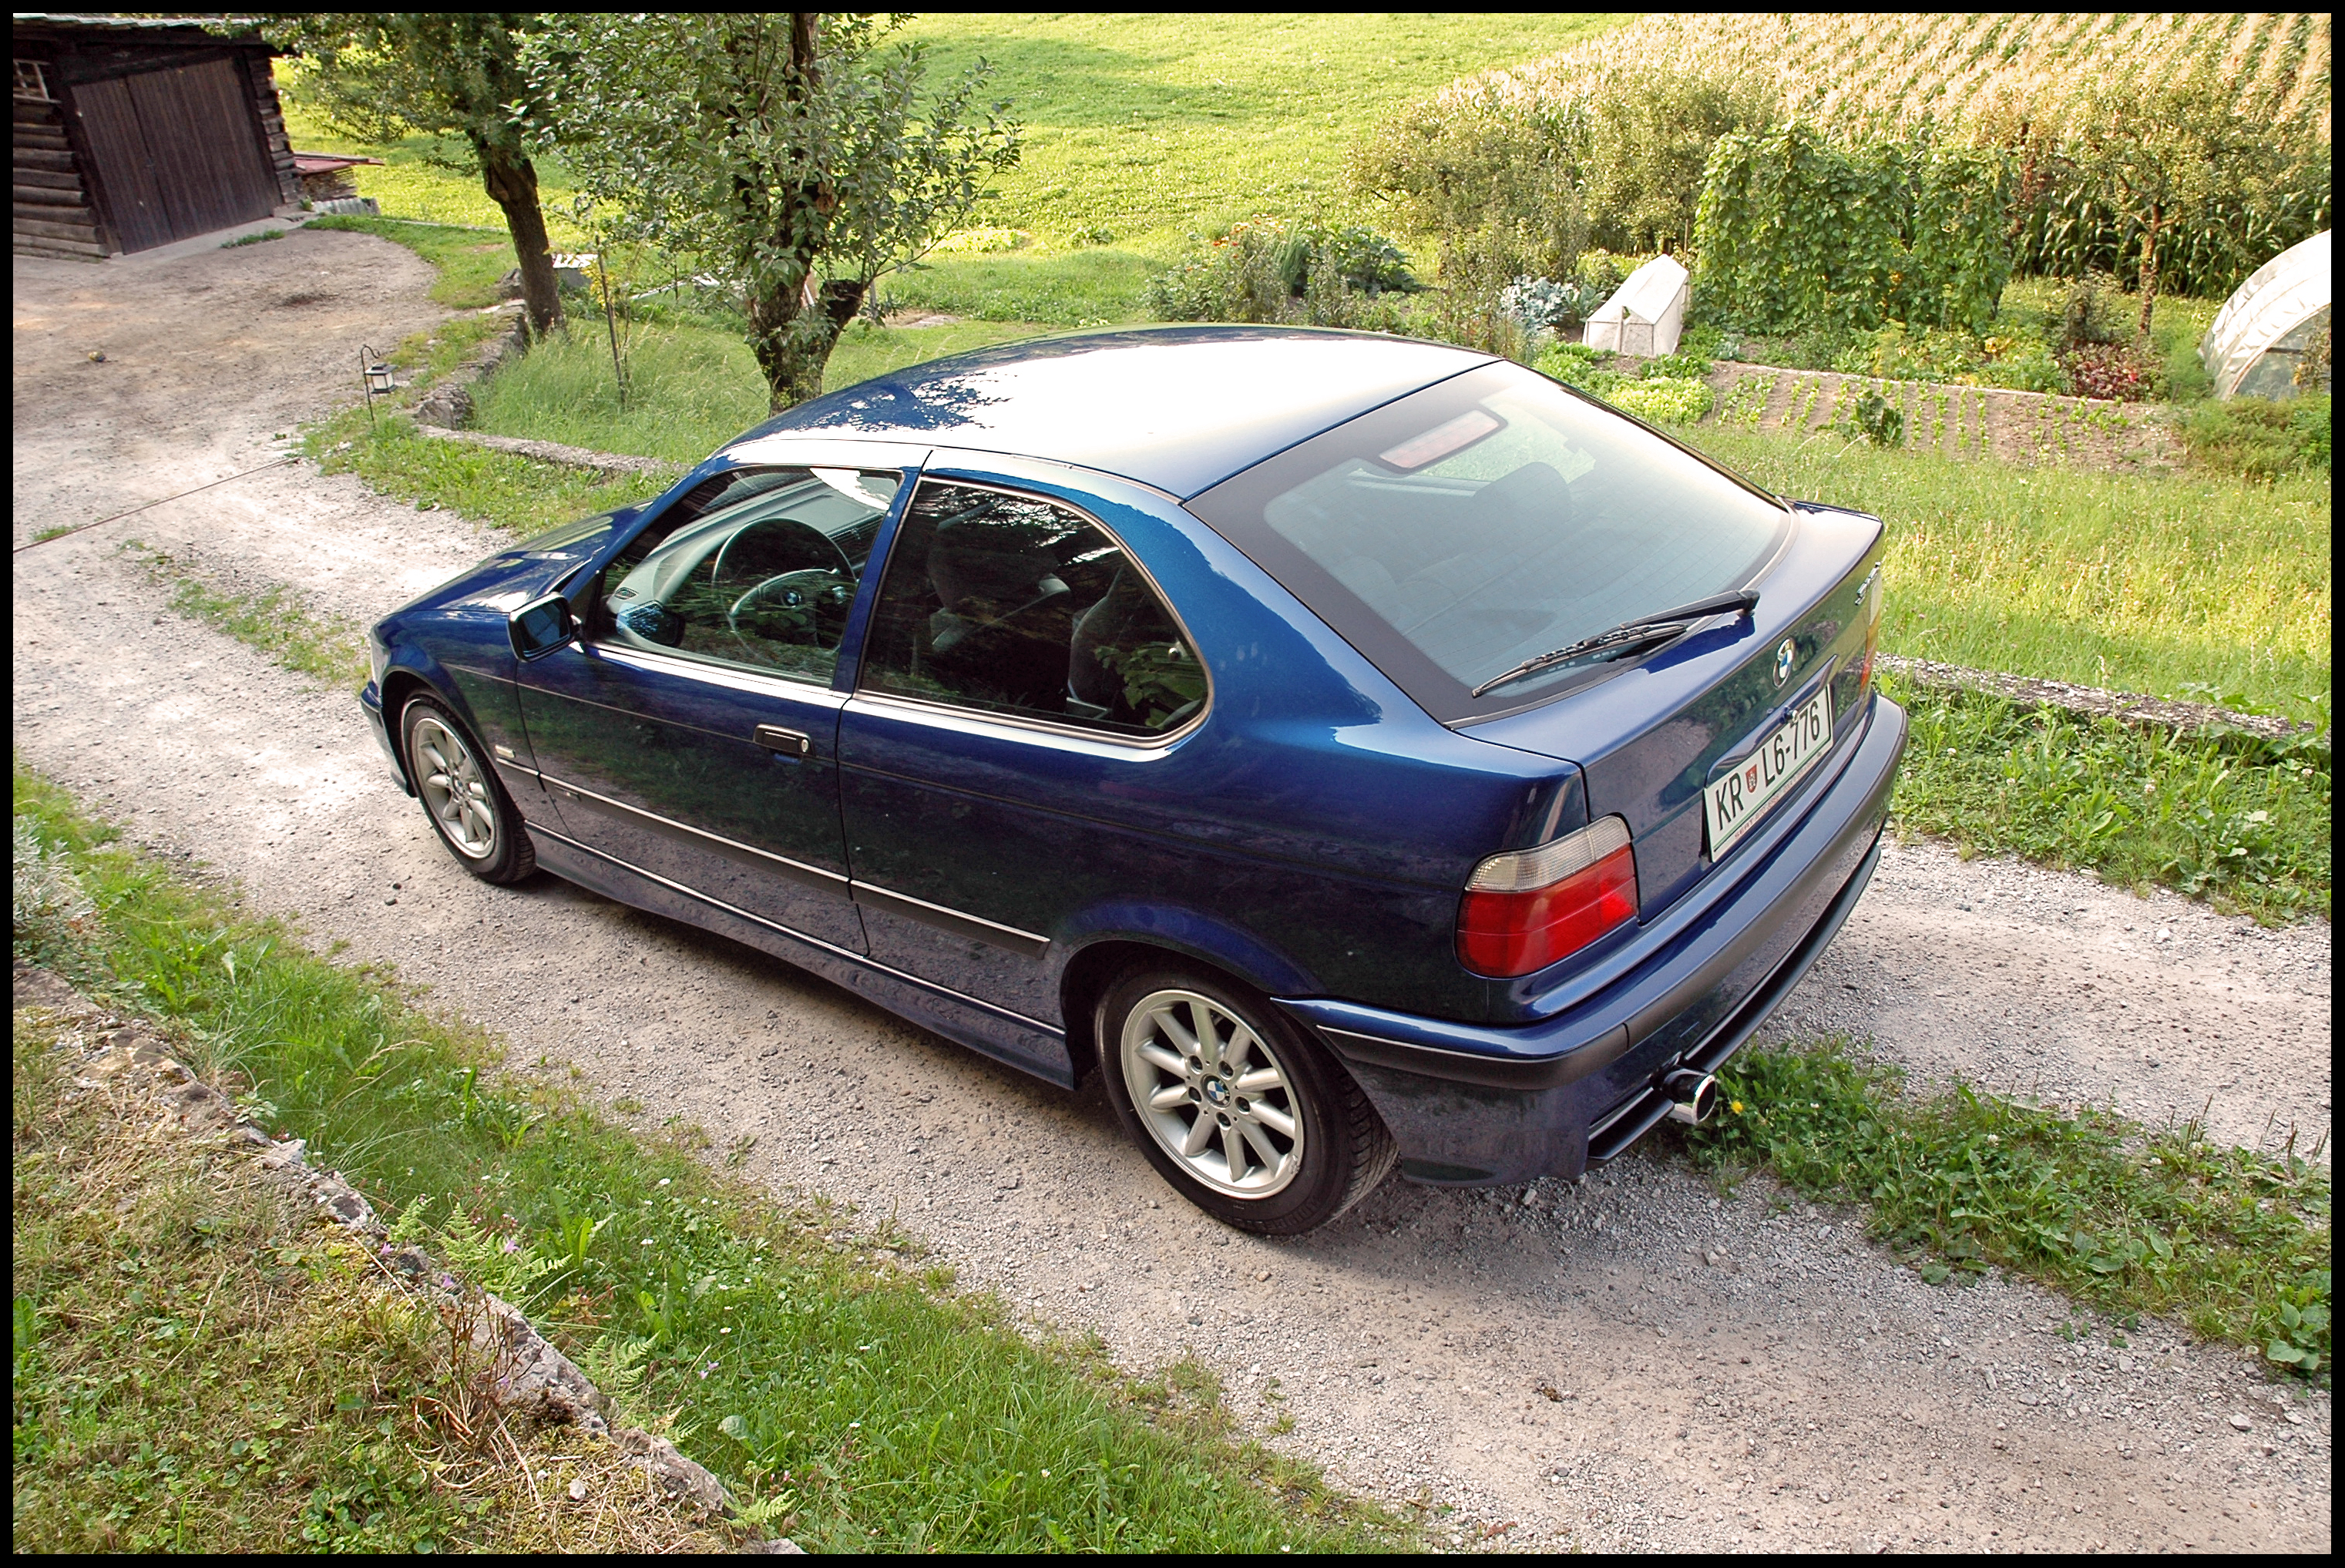 BMW 316ti, PuÅ¡tal, Slovenia | Flickr - Photo Sharing!